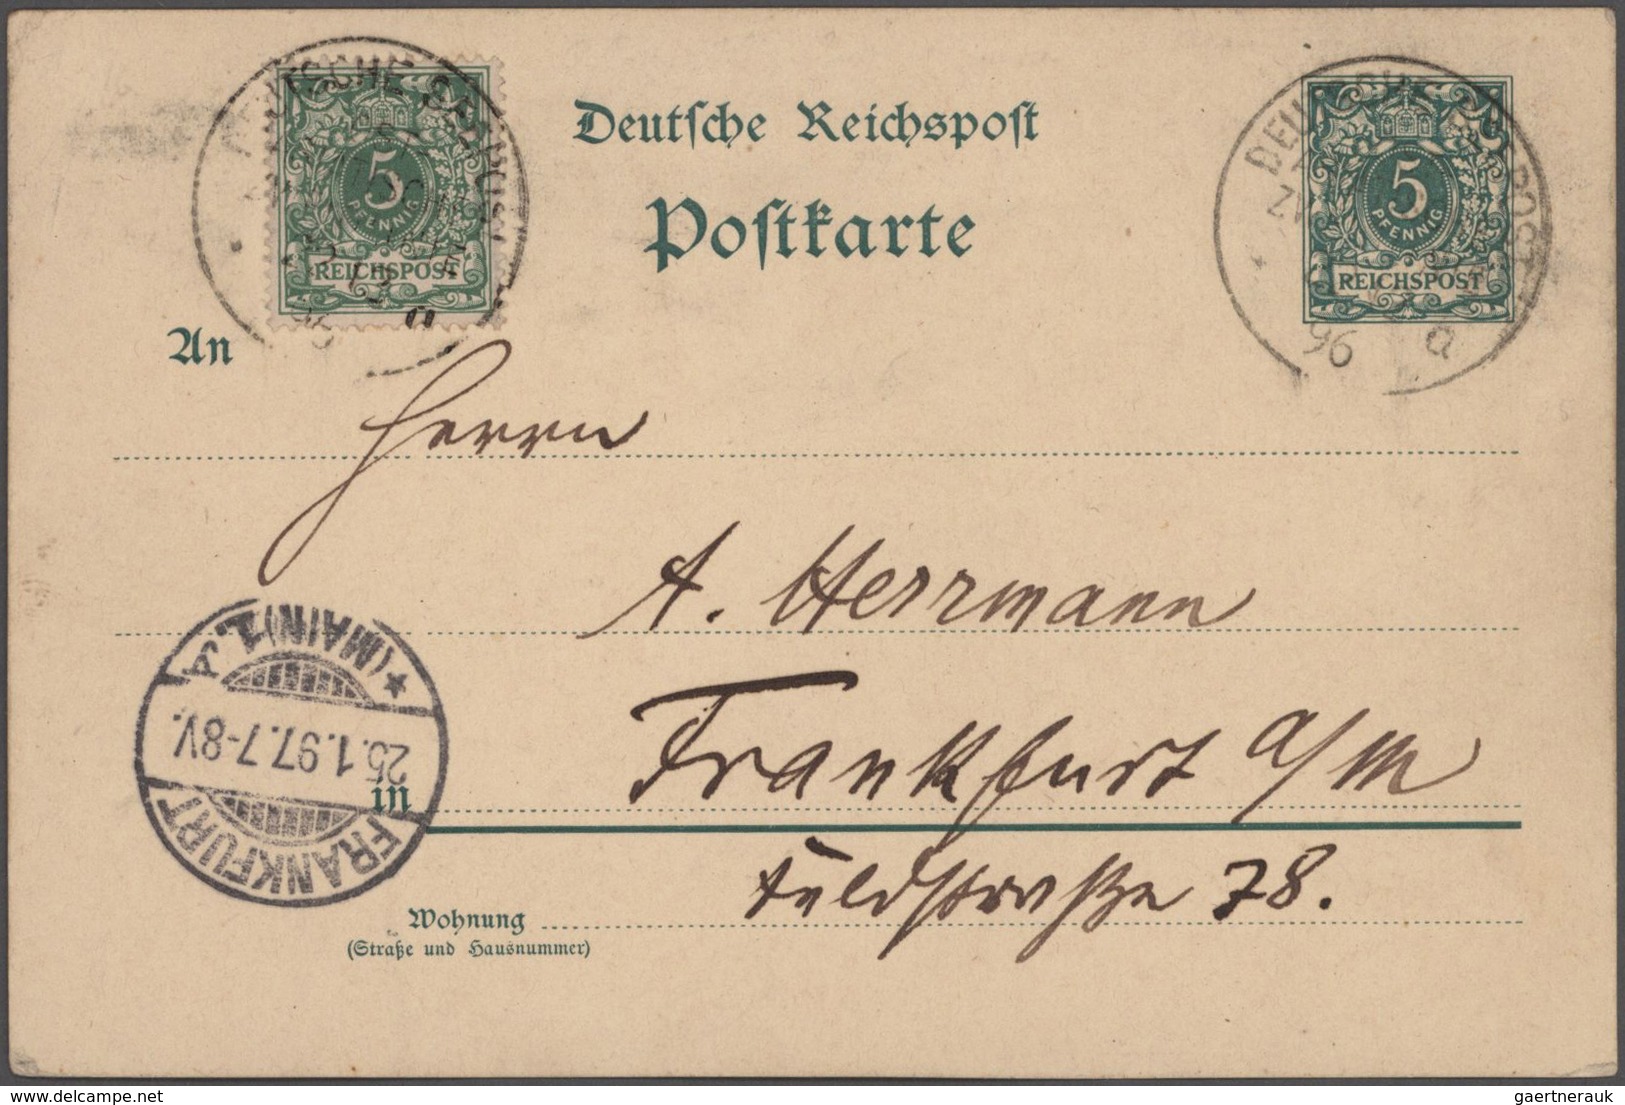 Deutsche Post in China: 1890/1909, umfangreicher Sammlungsbestand "Dt. Post in China und Kiautschou"